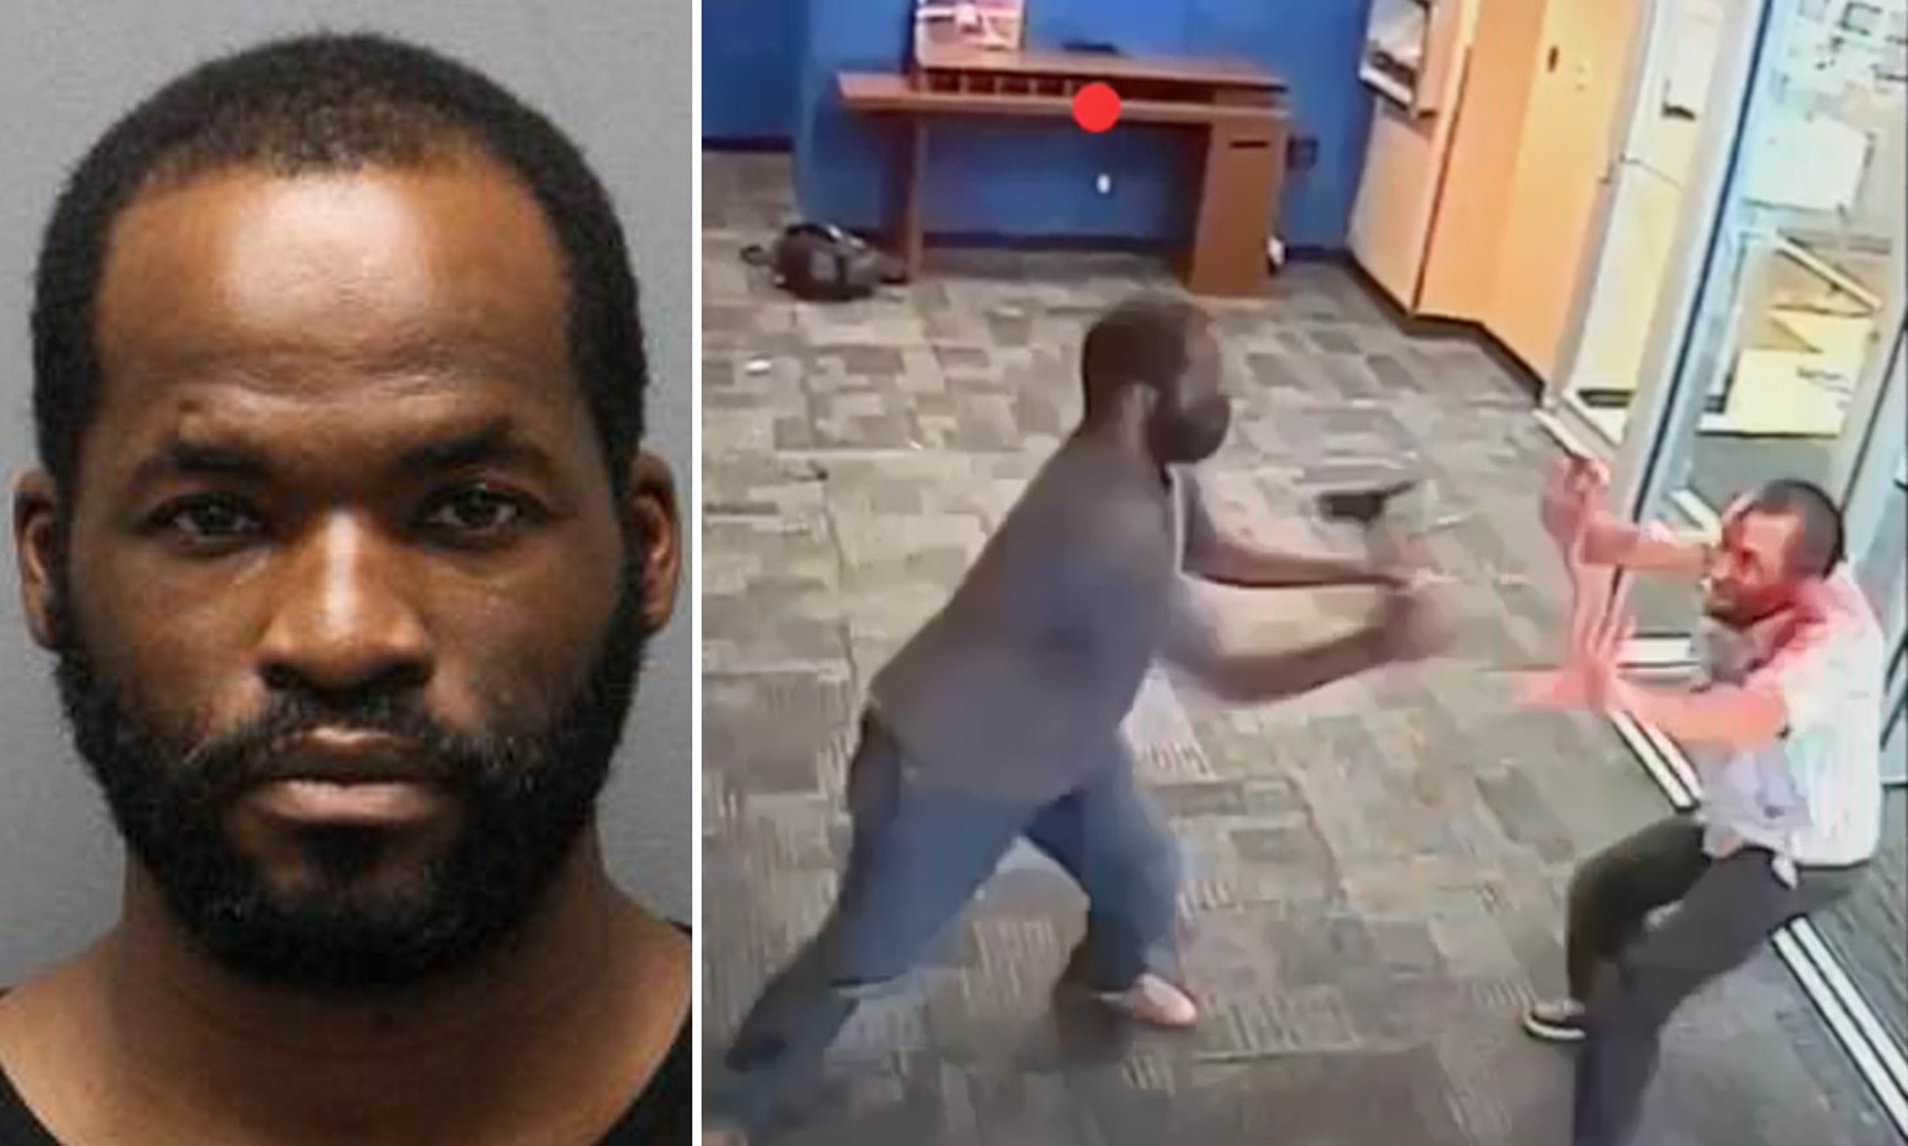 بالفيديو|| أمريكي من ذوي البشرة السمراء يهجم على بنك ويعتدي على أجهزته وأحد العملاء مستخدماً "بلطة"